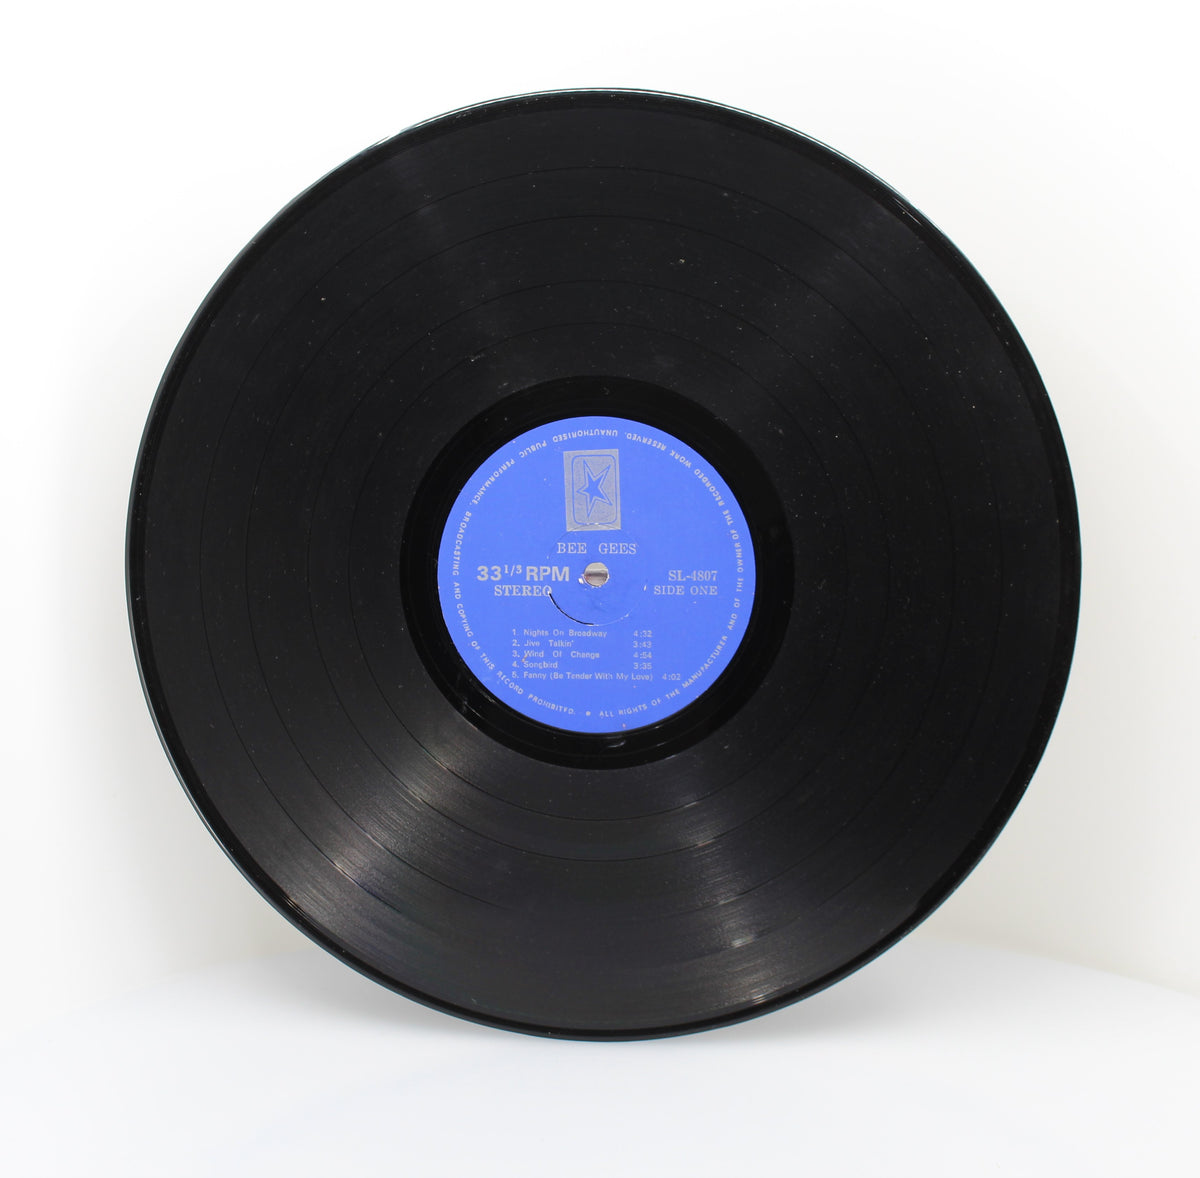 Bee Gees – Main Course, Vinyl, LP, Album, Australasia